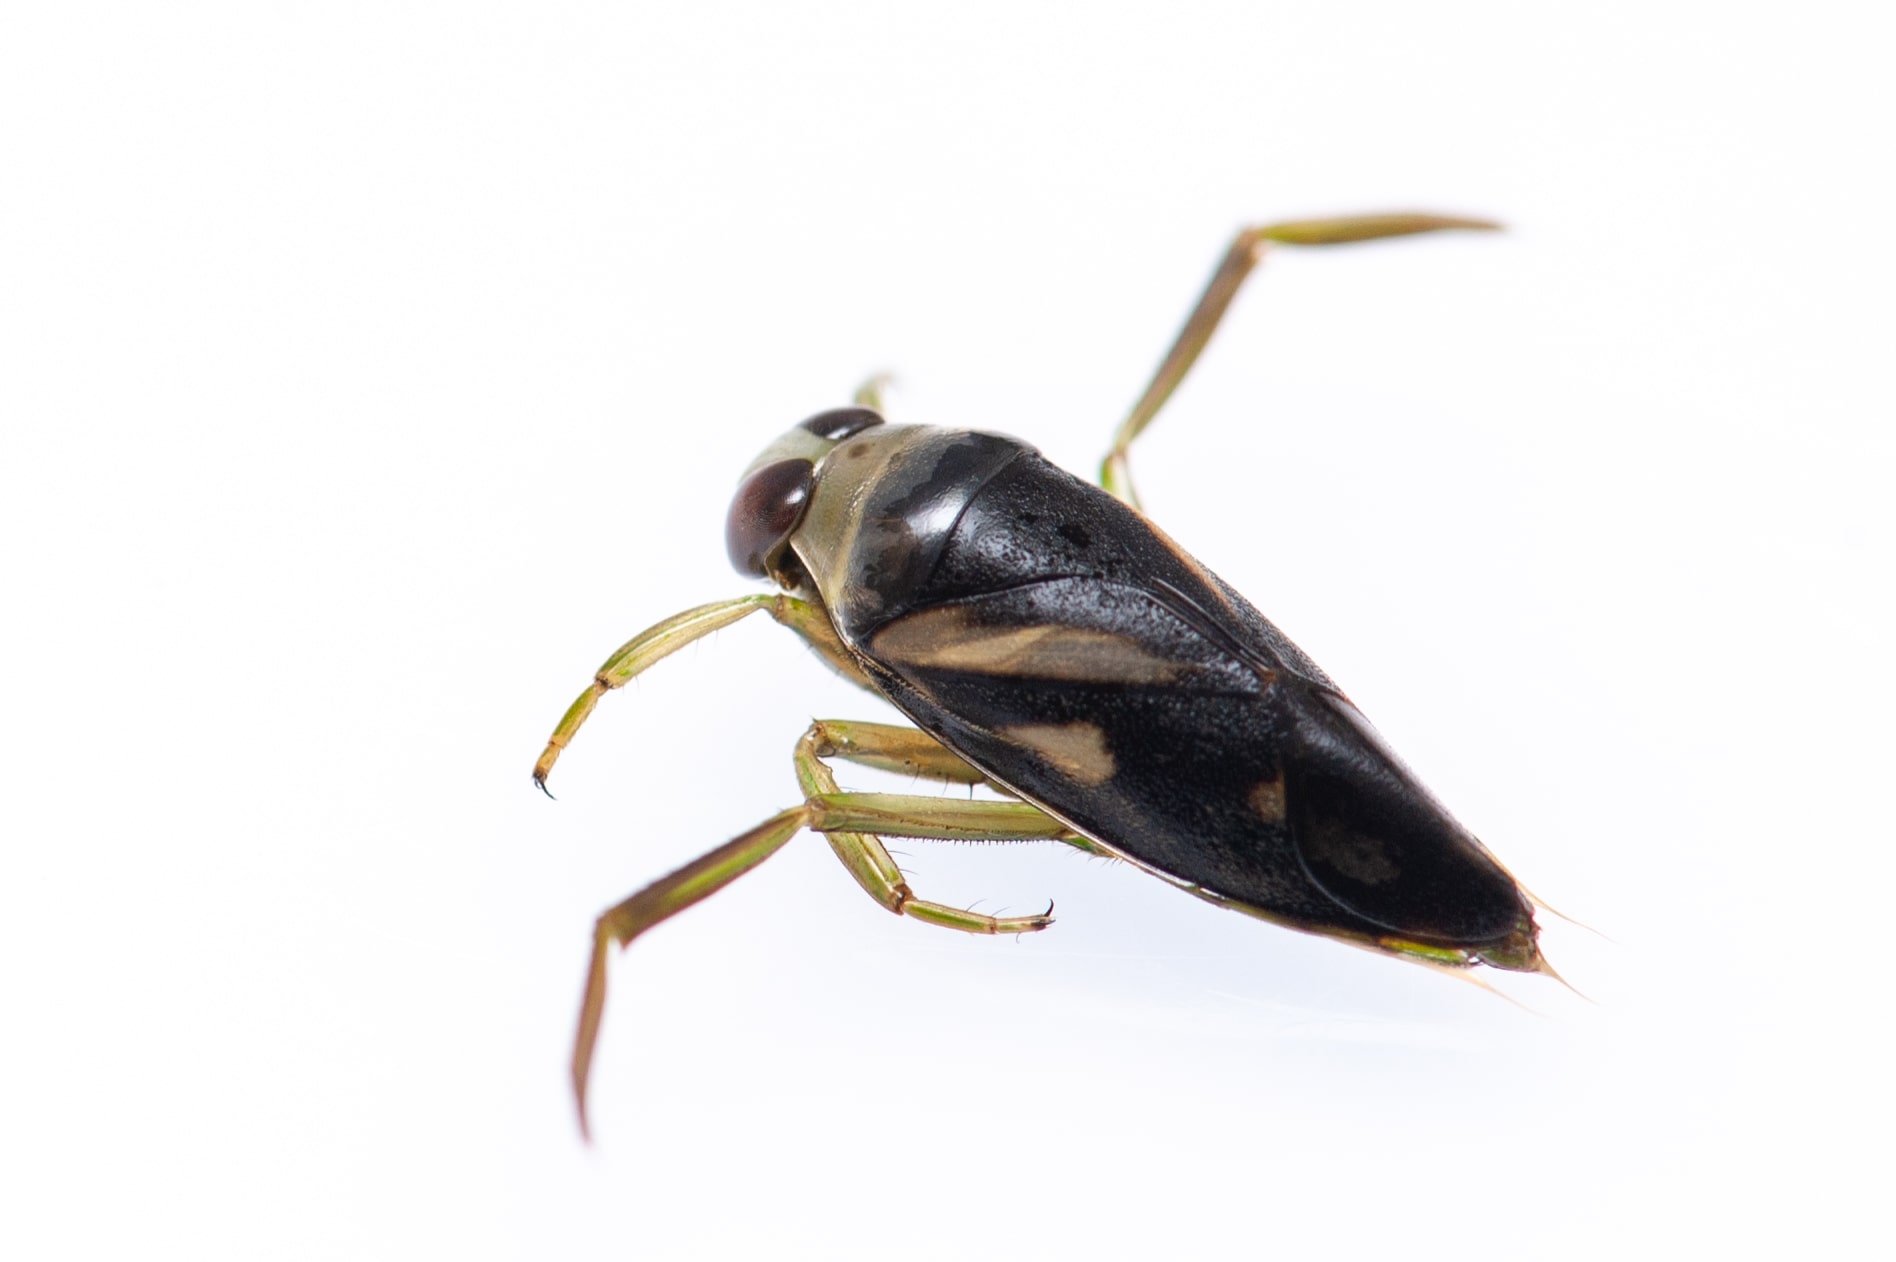 マツモムシの生態や背泳ぎのための後ろ脚 虫の写真と生態なら昆虫写真図鑑 ムシミル